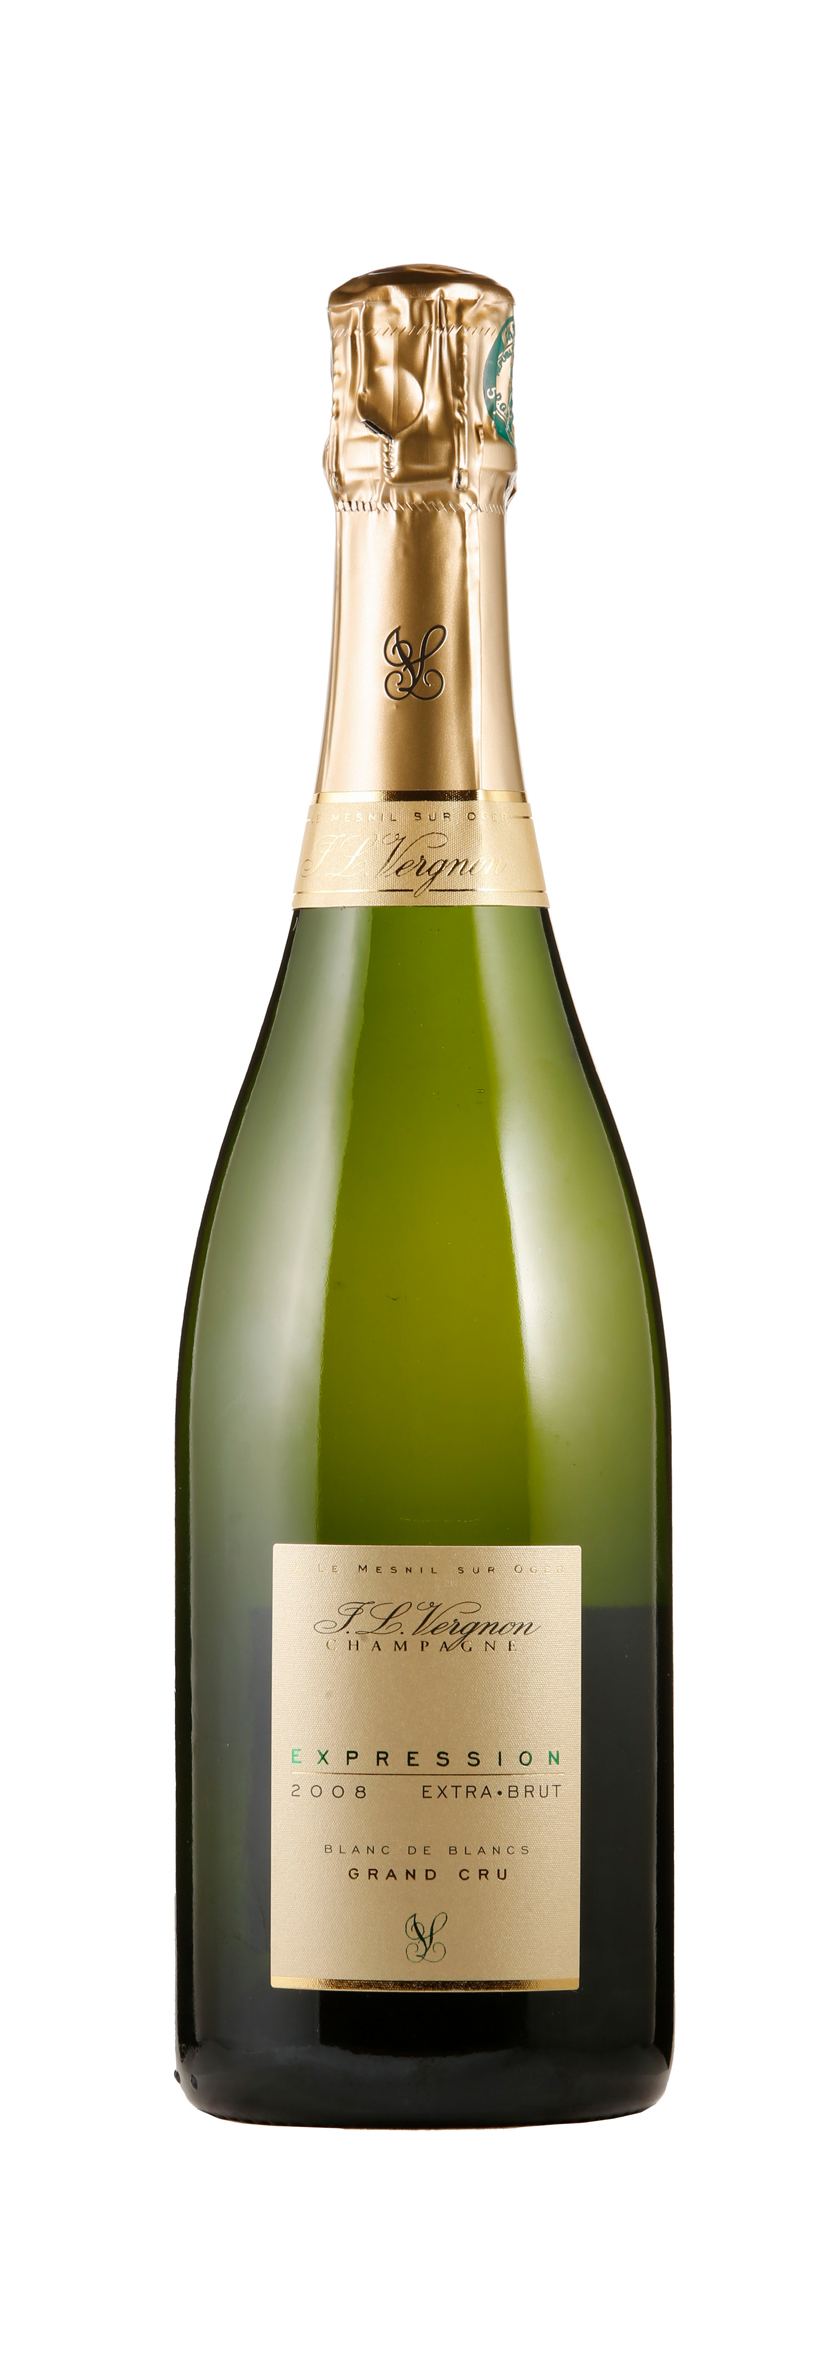 Champagne AOC Grand Cru Expression Extra Brut 2008